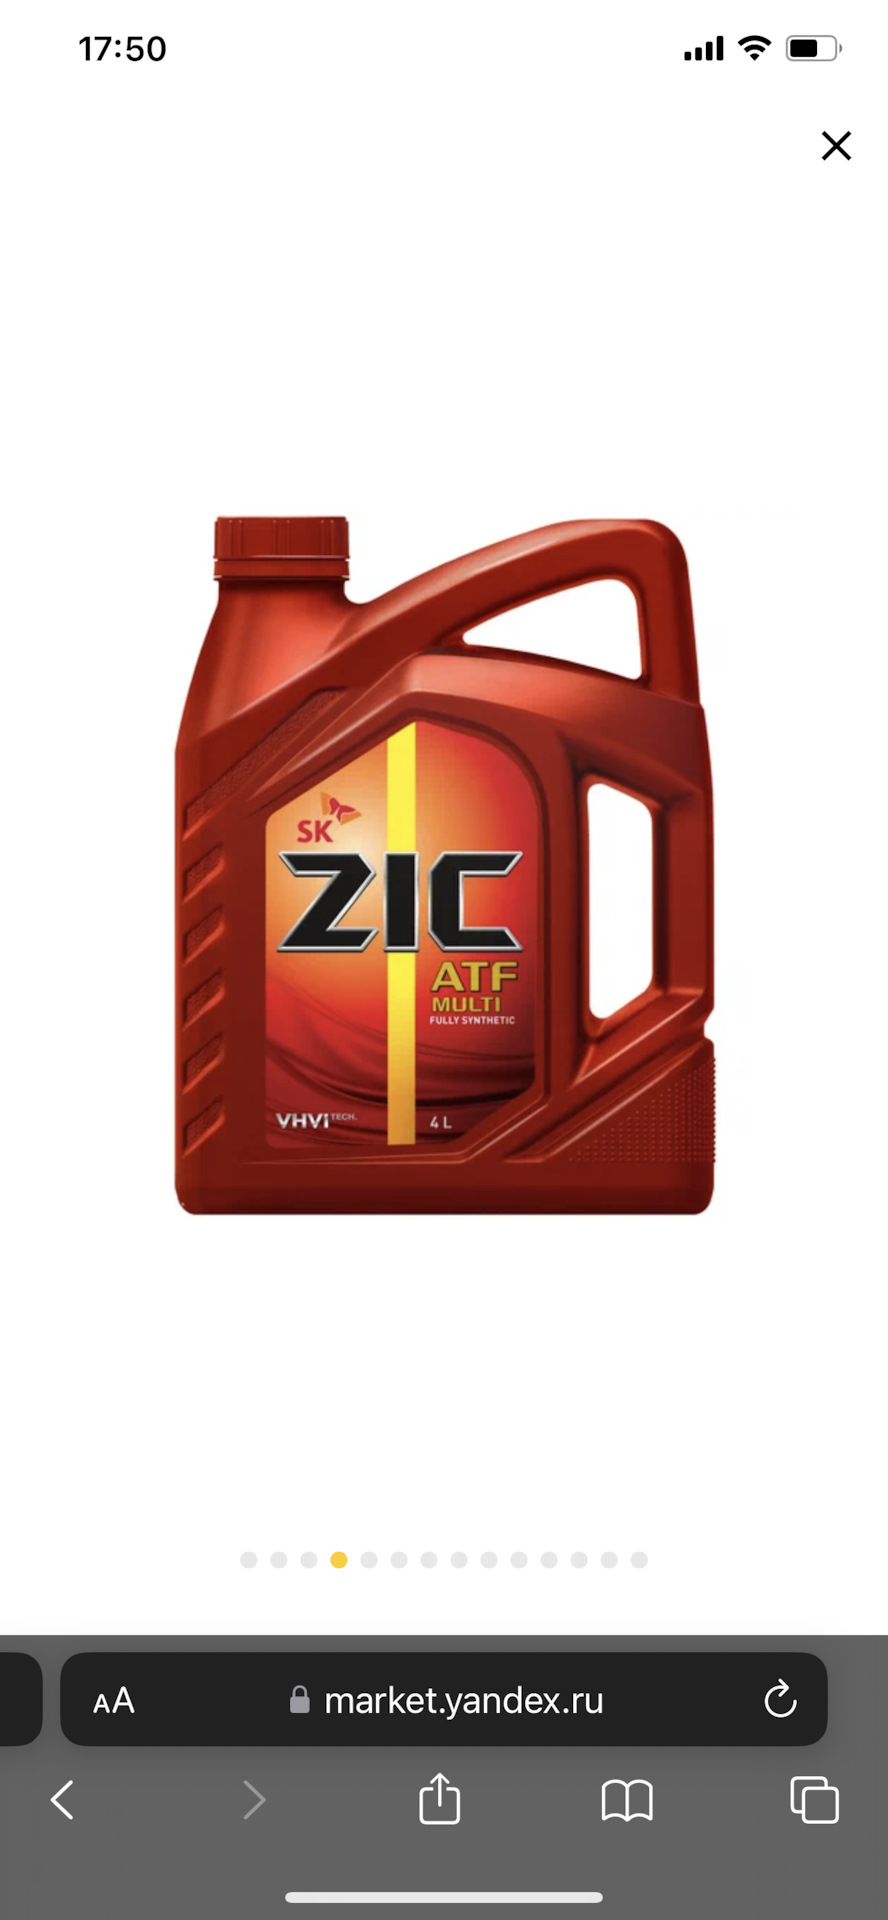 Zic масло трансмиссионное atf multi. ZIC 162629 масло трансмиссионное. ZIC синтетическое масло «ATF SP 3». ZIC ATF Multi HT 1л. Масло АКПП 236.15 ZIC.